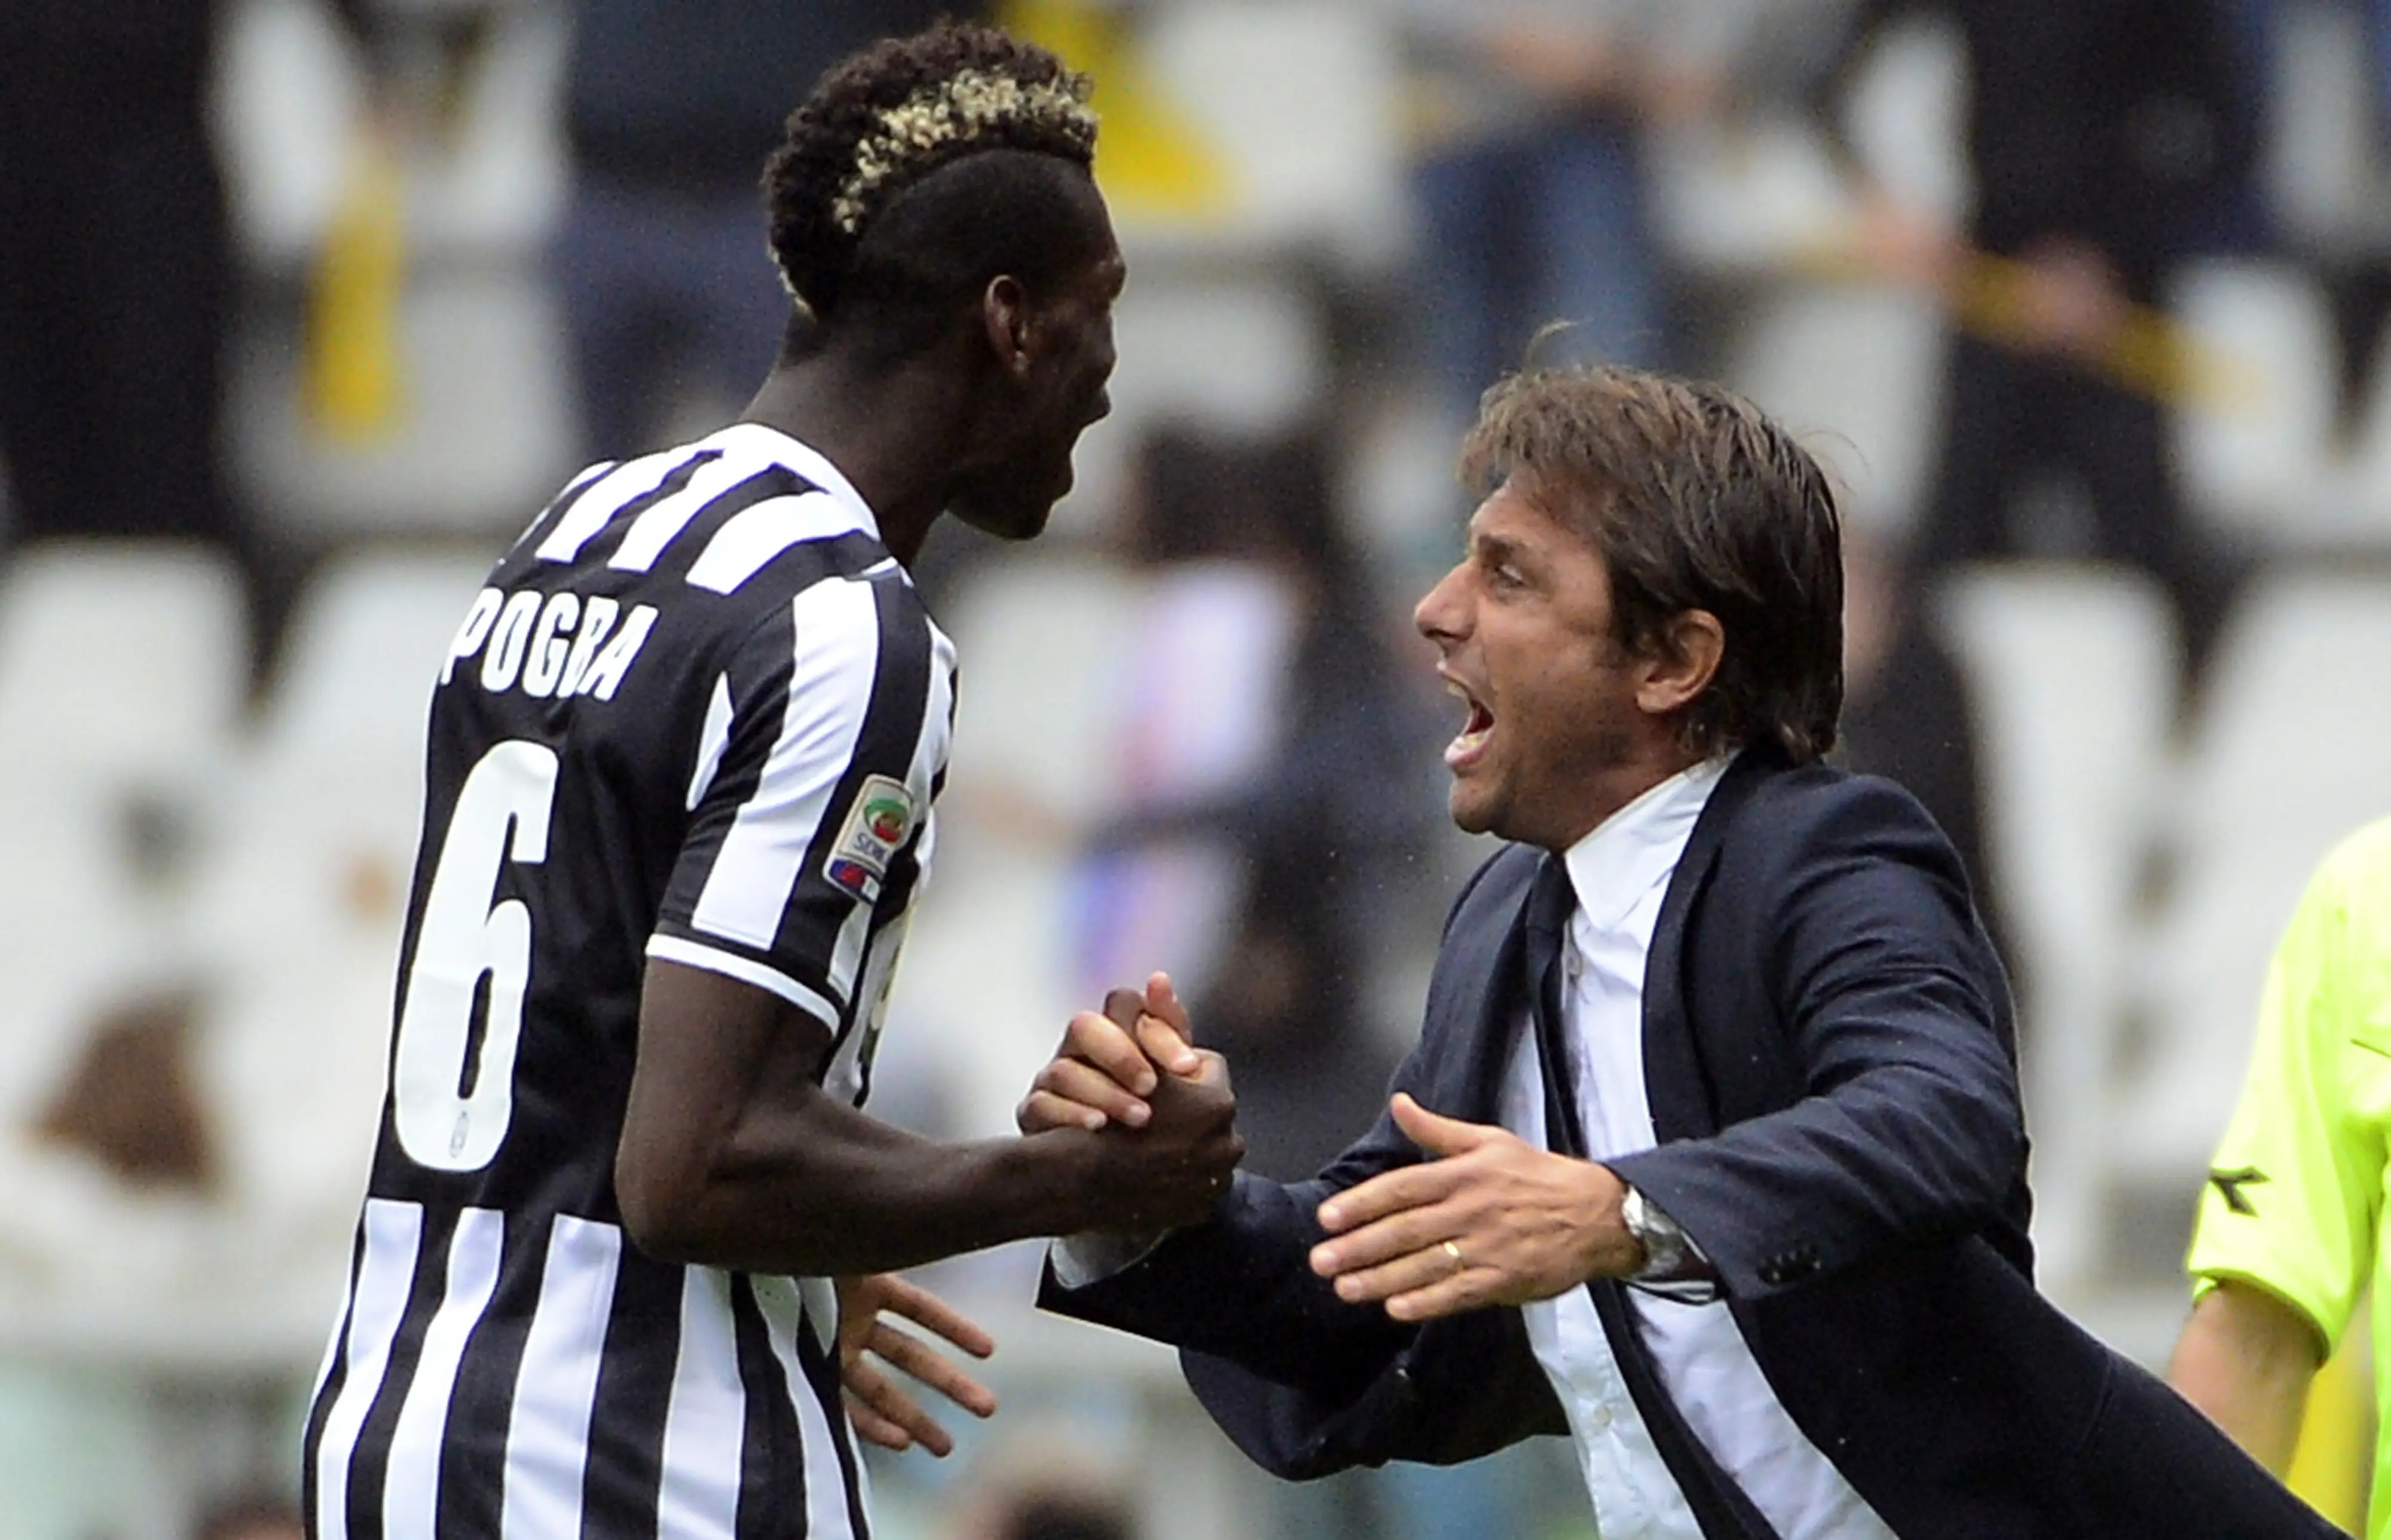 Paul Pogba dan Antonio Conte saat masih bekerja sama di Juventus. (OLIVIER MORIN / AFP)